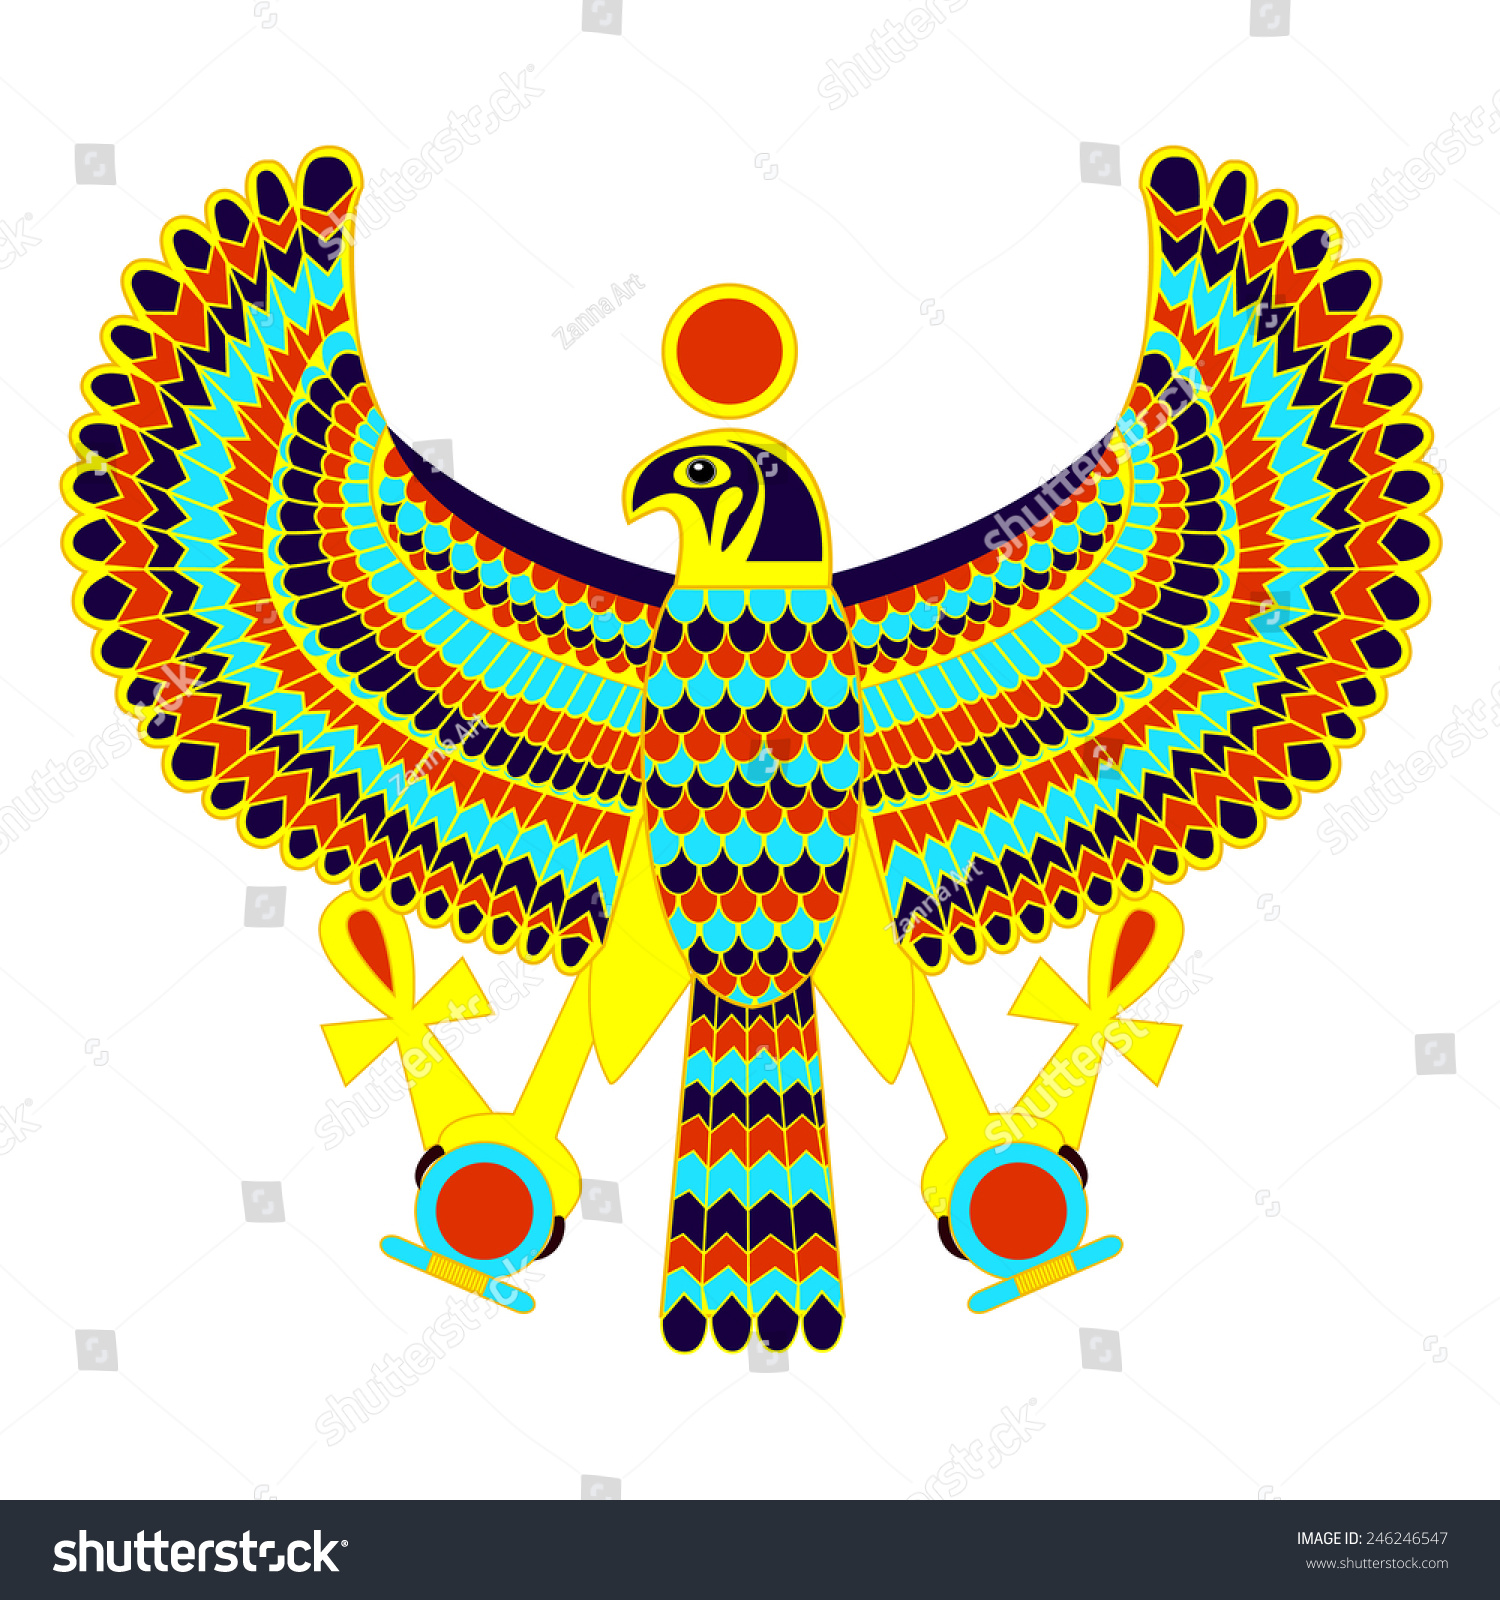 Egypt Logos